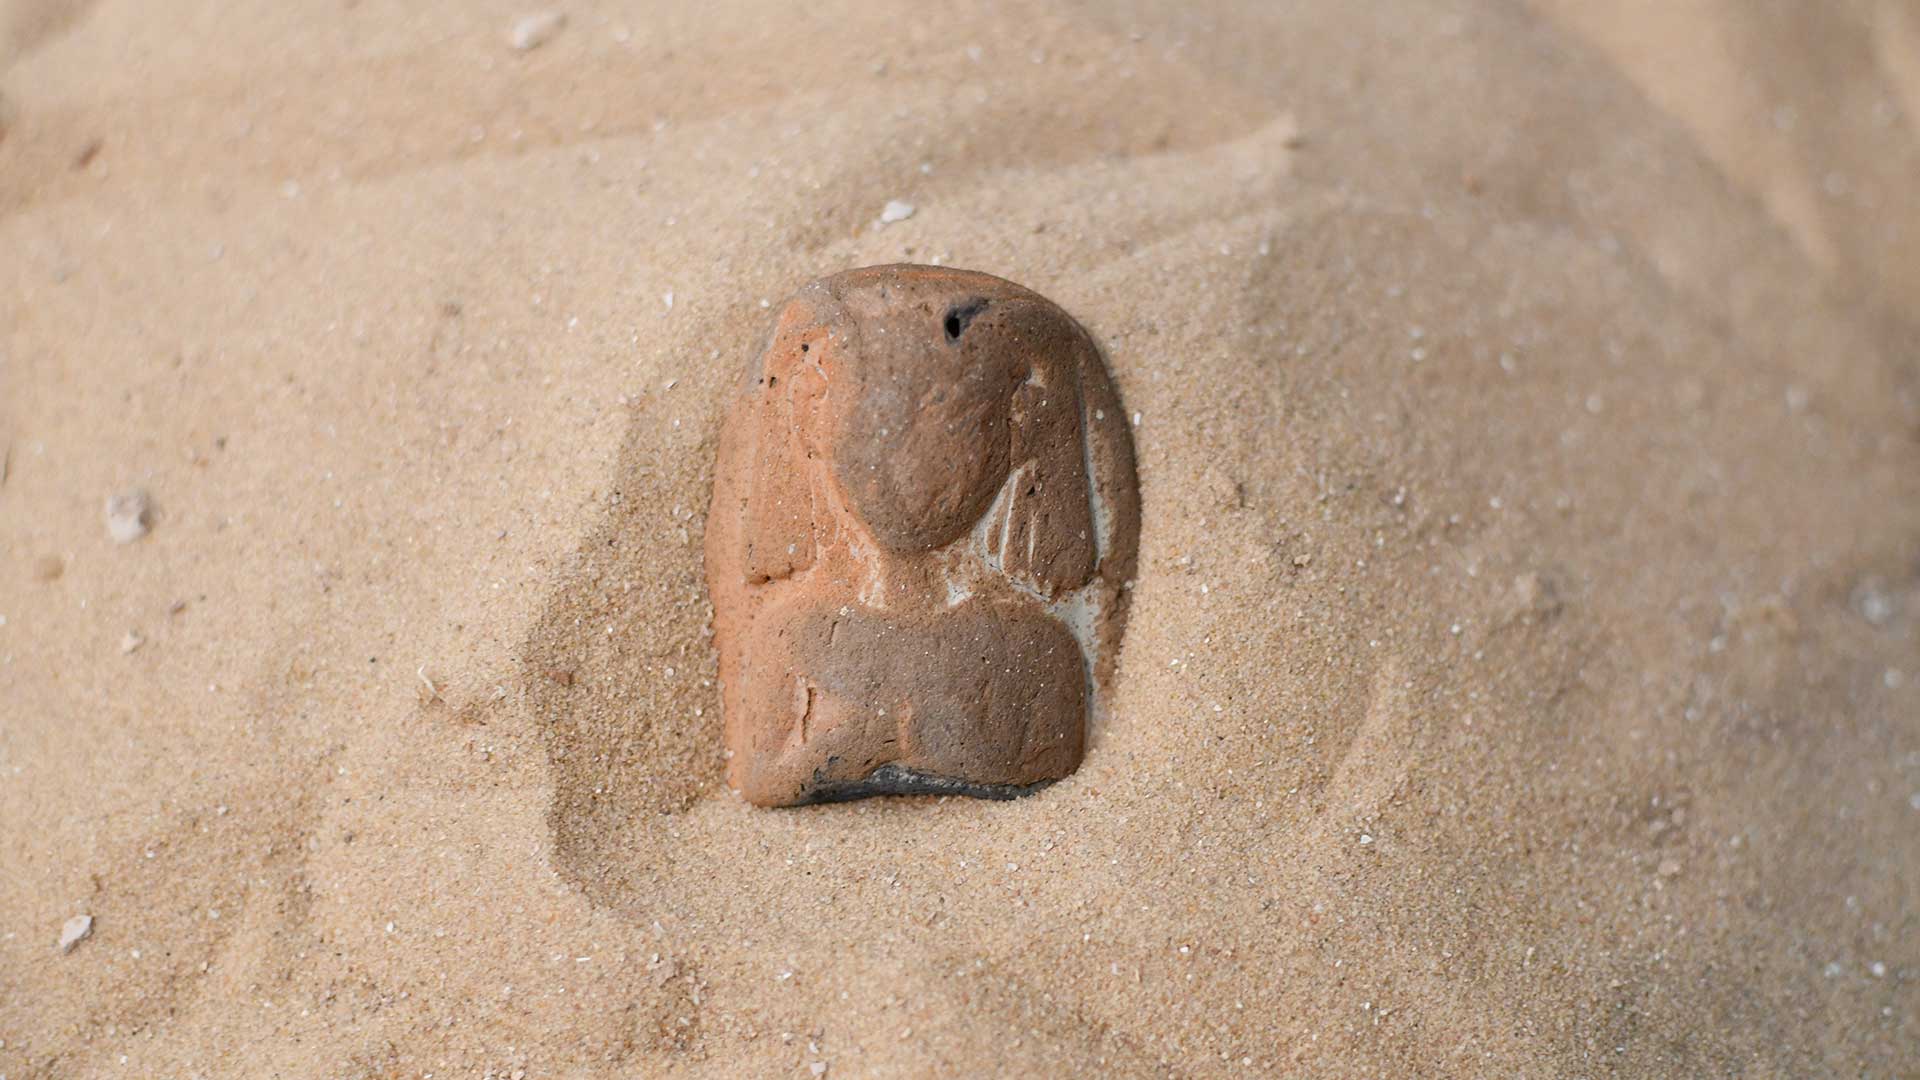 Egyptian artifact found on beach.